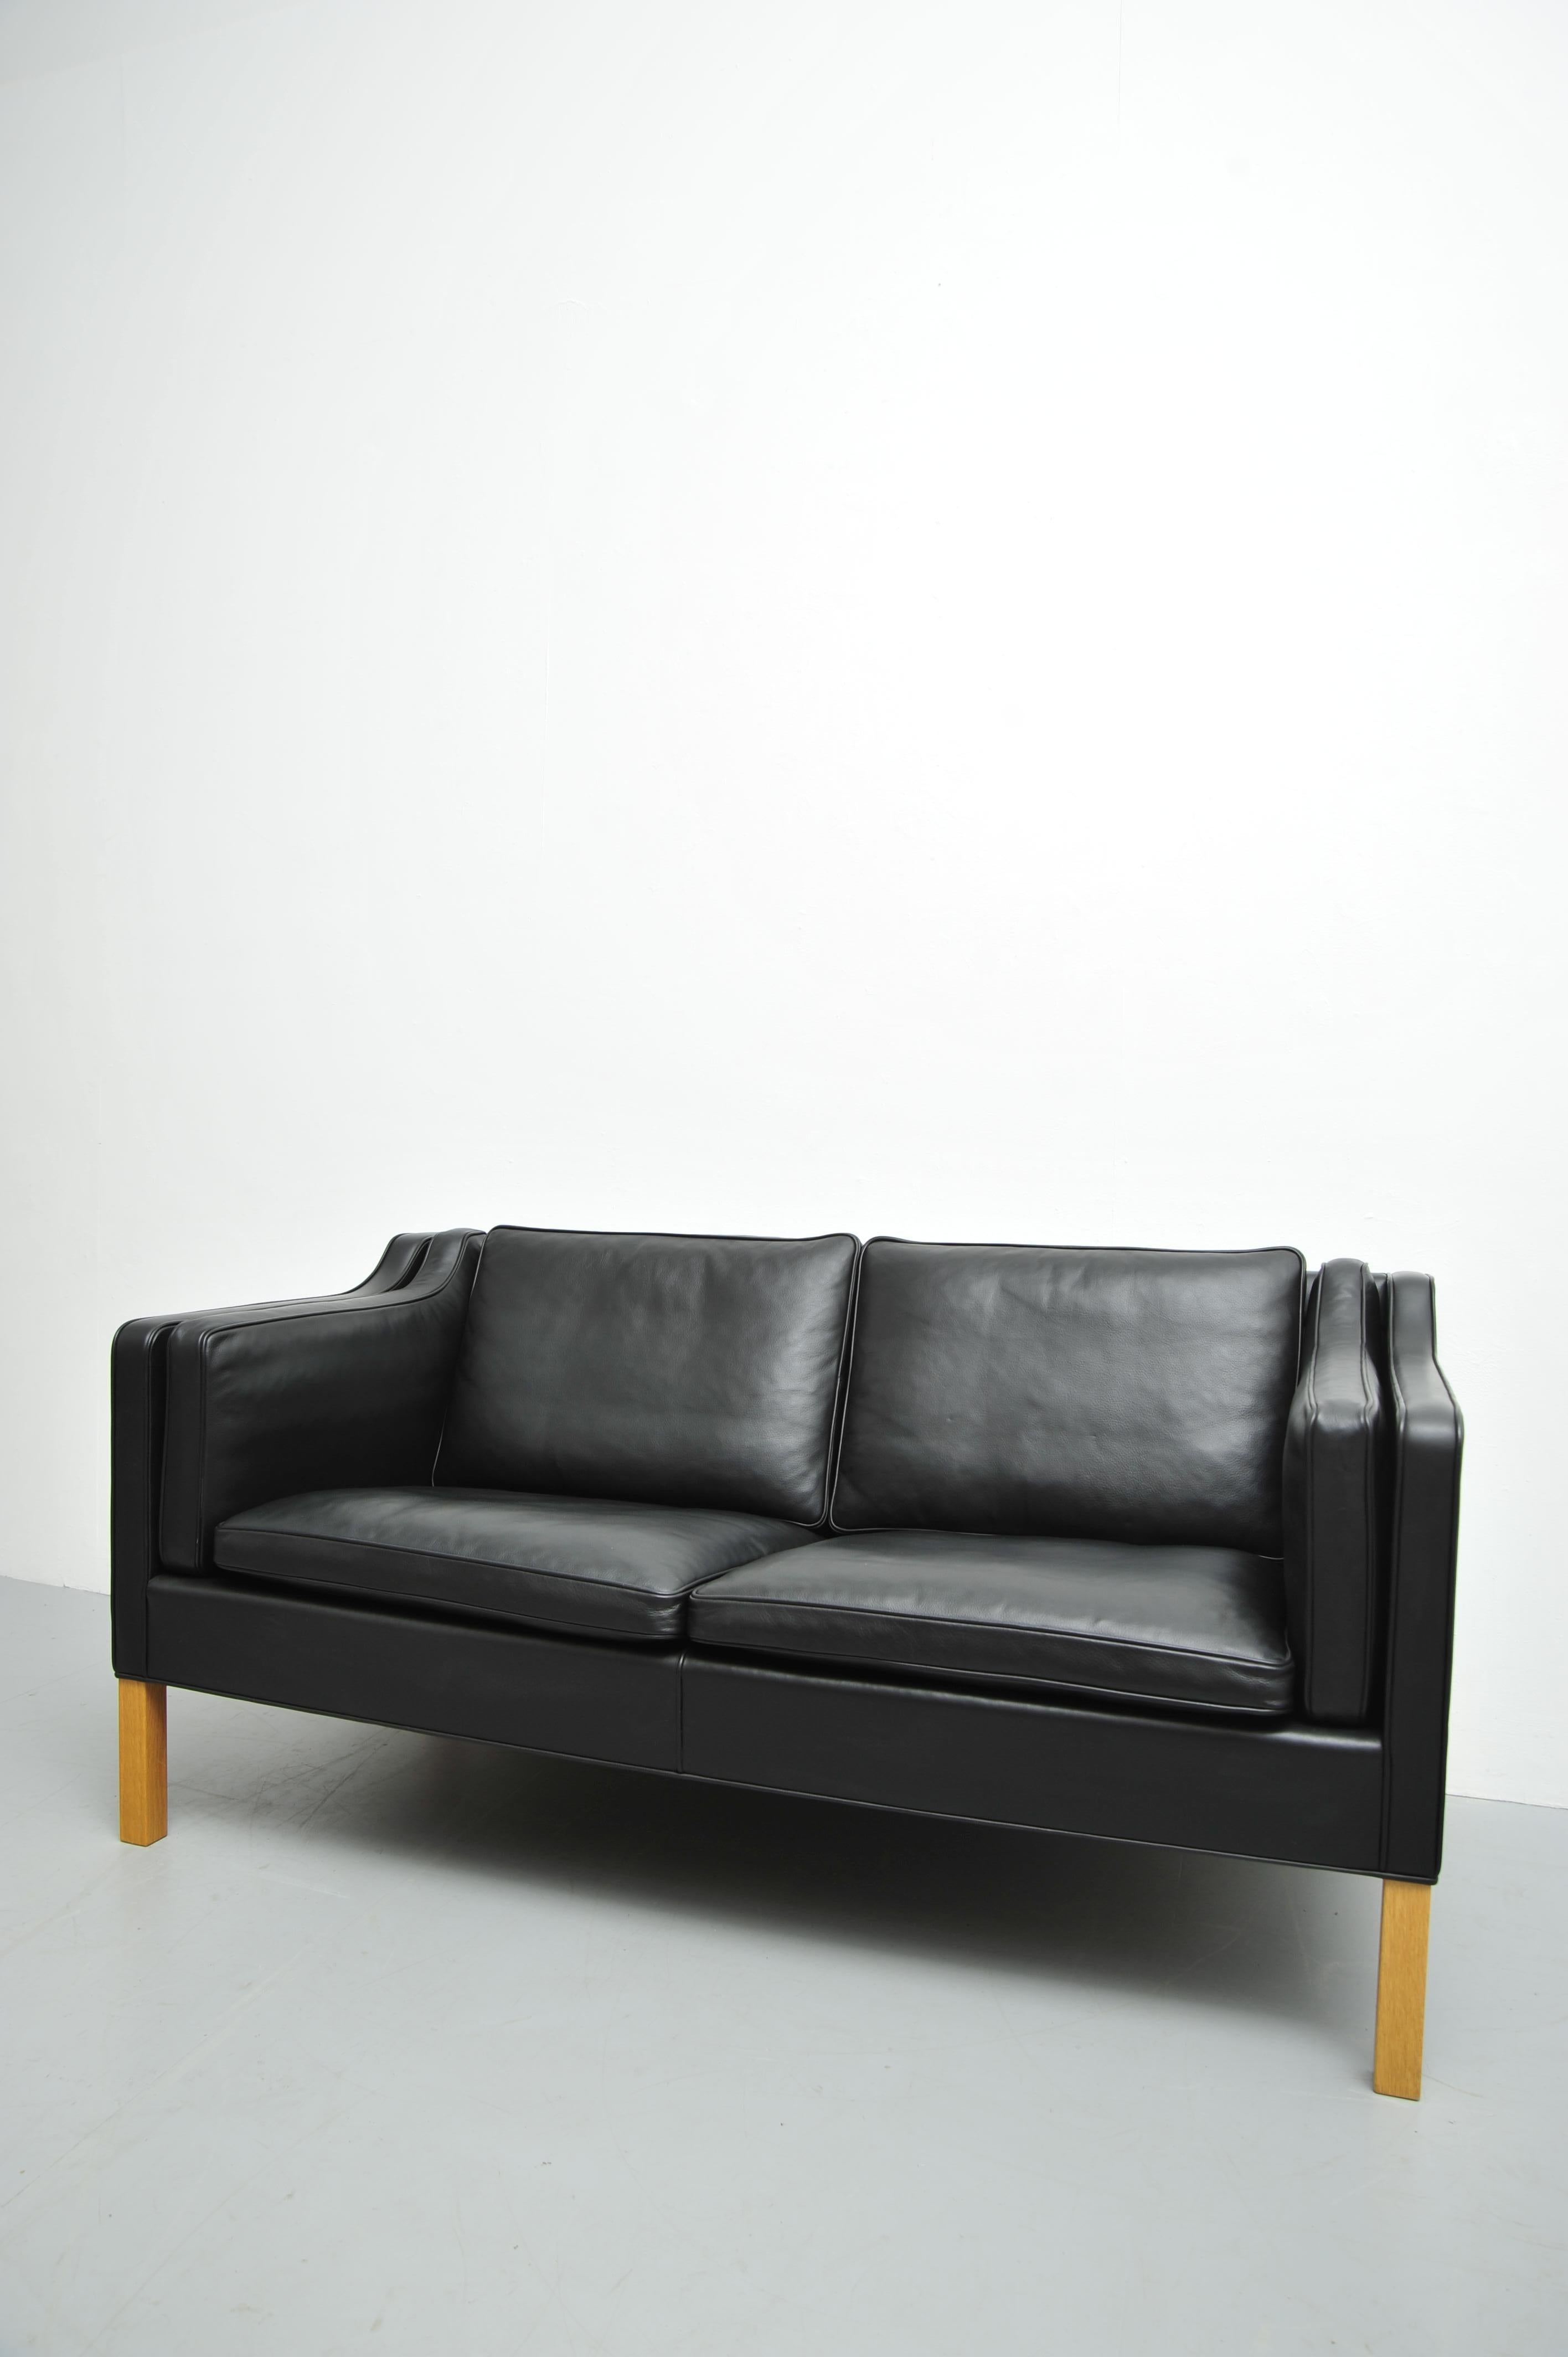 Très beau canapé deux places, en cuir noir. Très très bon état, le canapé serait à peine utilisé.